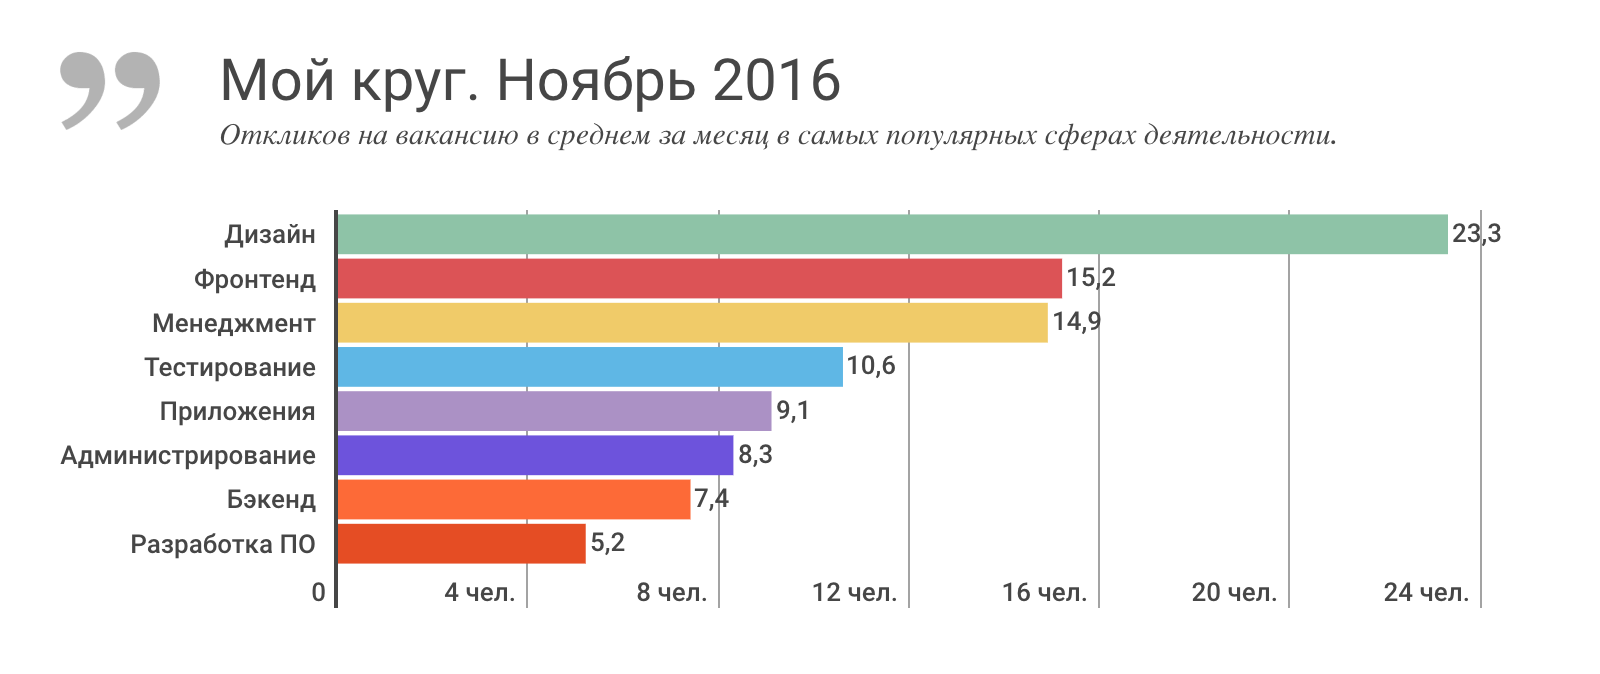 Отчет о результатах «Моего круга» за ноябрь 2016, и самые популярные вакансии месяца - 2